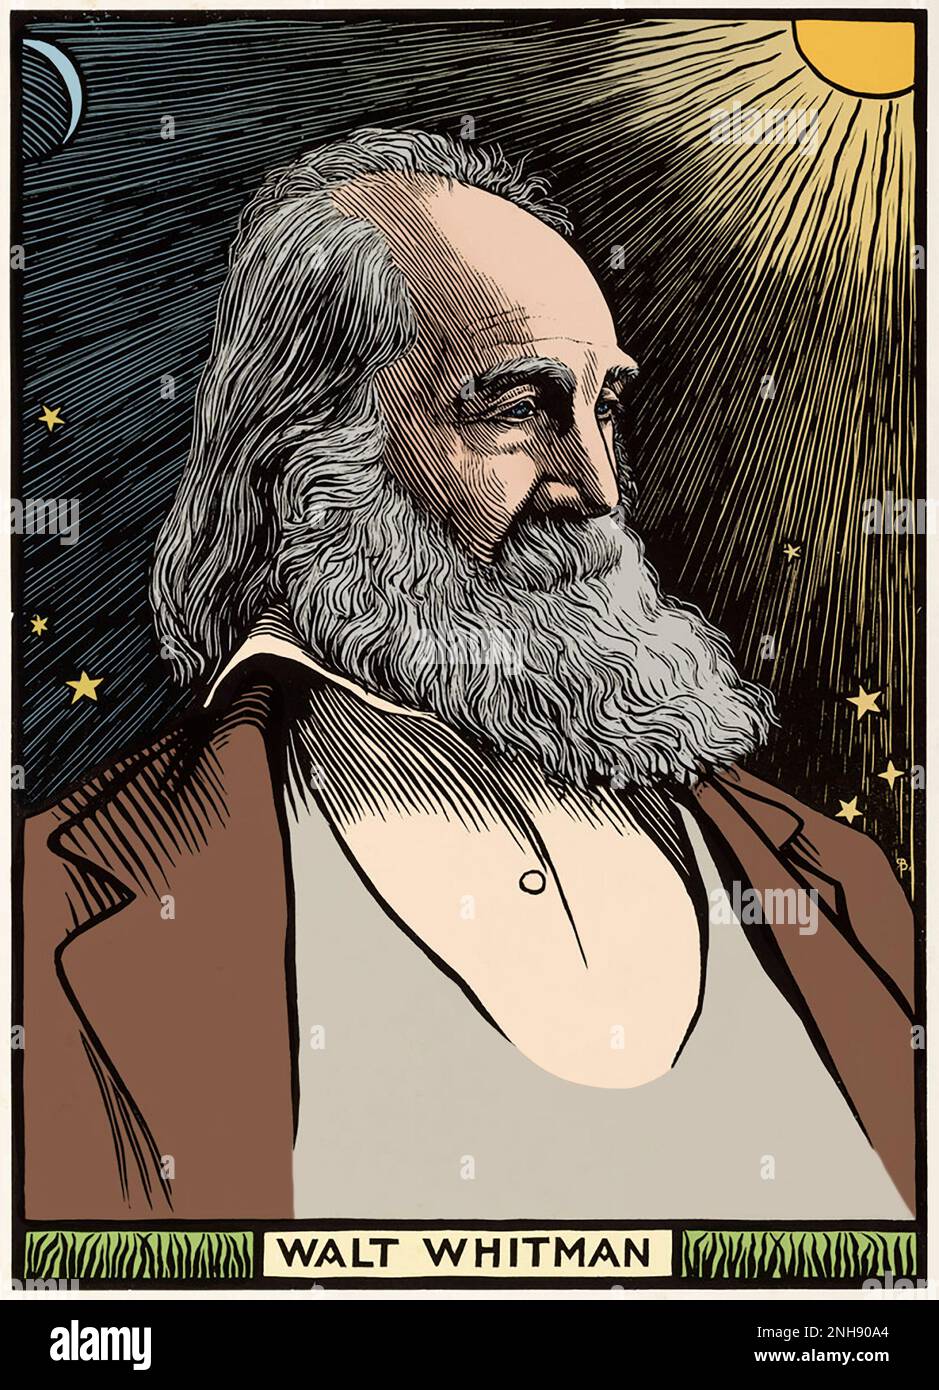 Walt Whitman (1819-1892), amerikanischer Dichter, Essayist und Journalist, berühmt für seine Poesie-Sammlung „Leaves of Grass“ von 1855. Holzschnitt von Robert Bryden (1865-1939), einem schottischen Künstler und Bildhauer, aus dem Jahr 1899. Gefärbt. Stockfoto